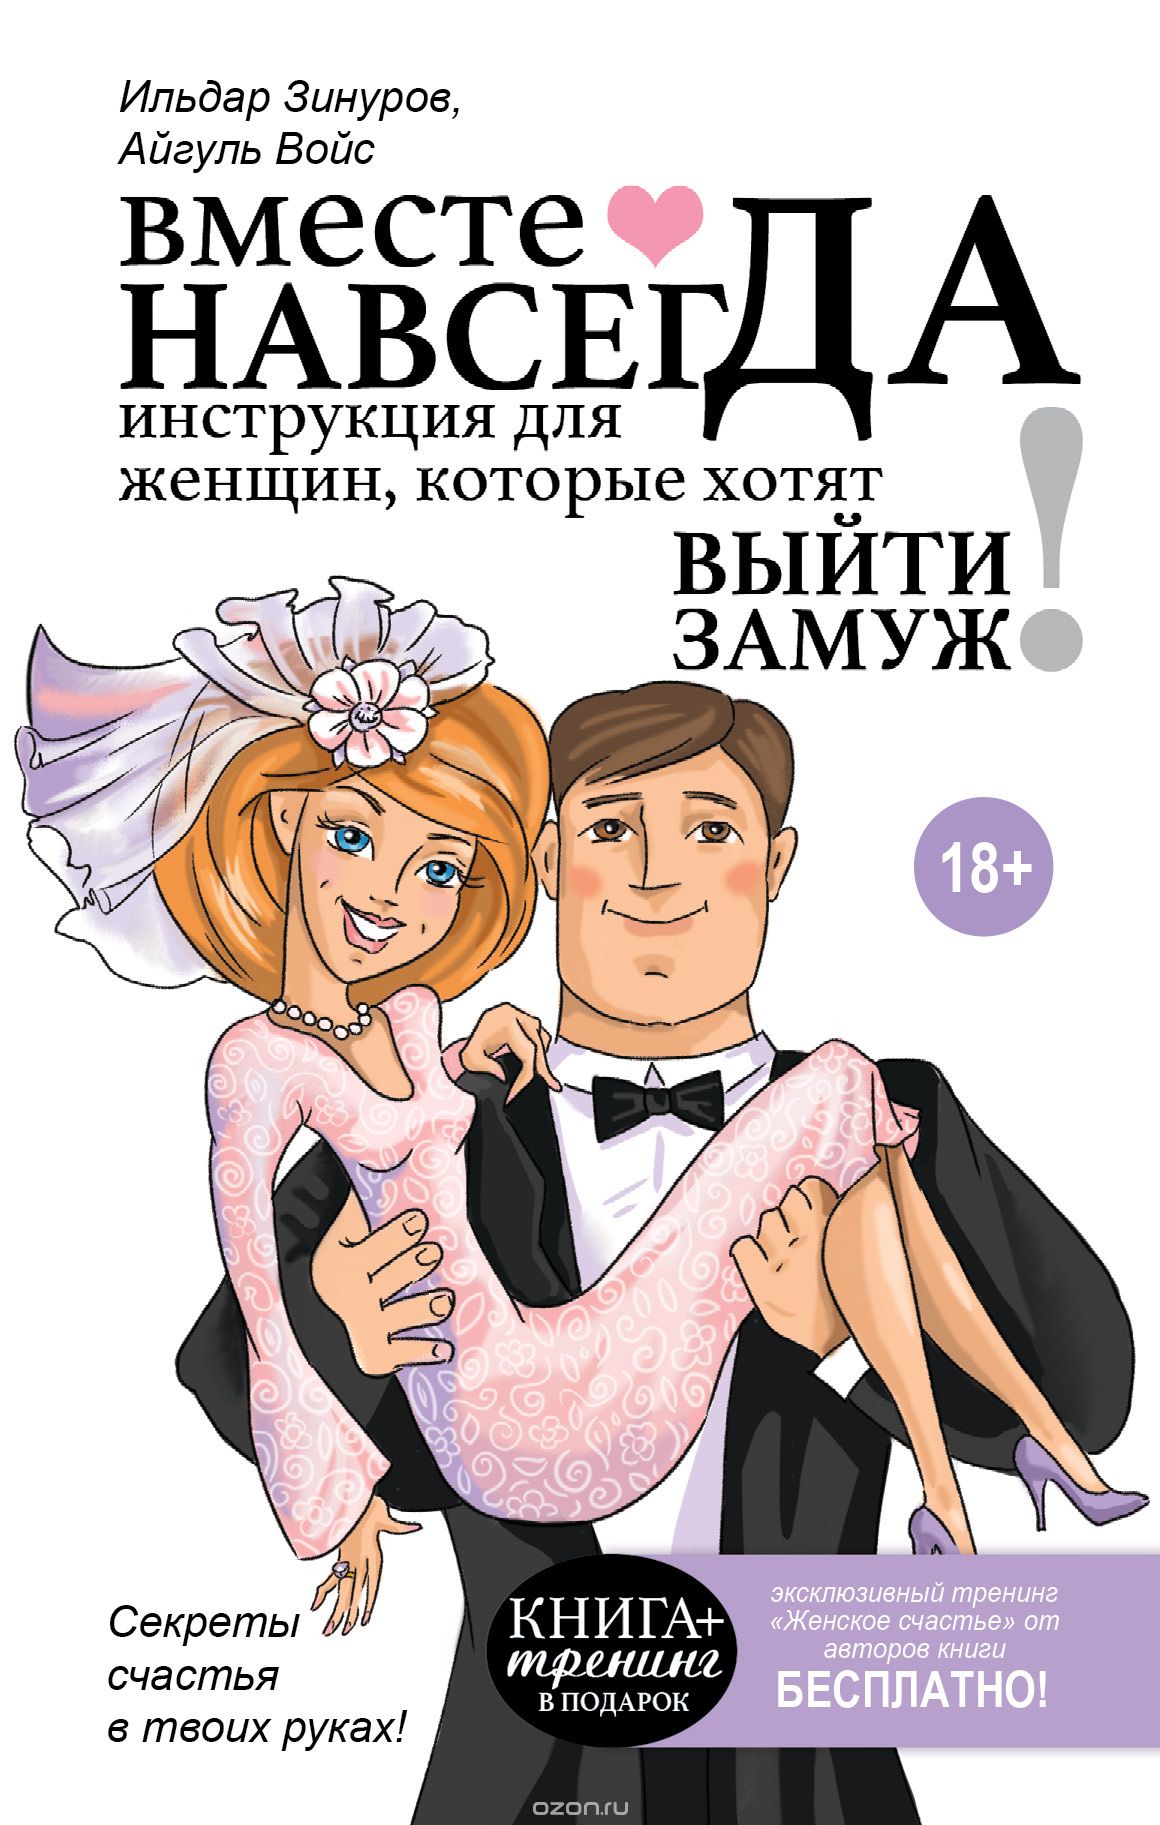 Вместе навсегда. Инструкция для женщин, которые хотят выйти замуж, Ильдар Зинуров, Айгуль Зинурова